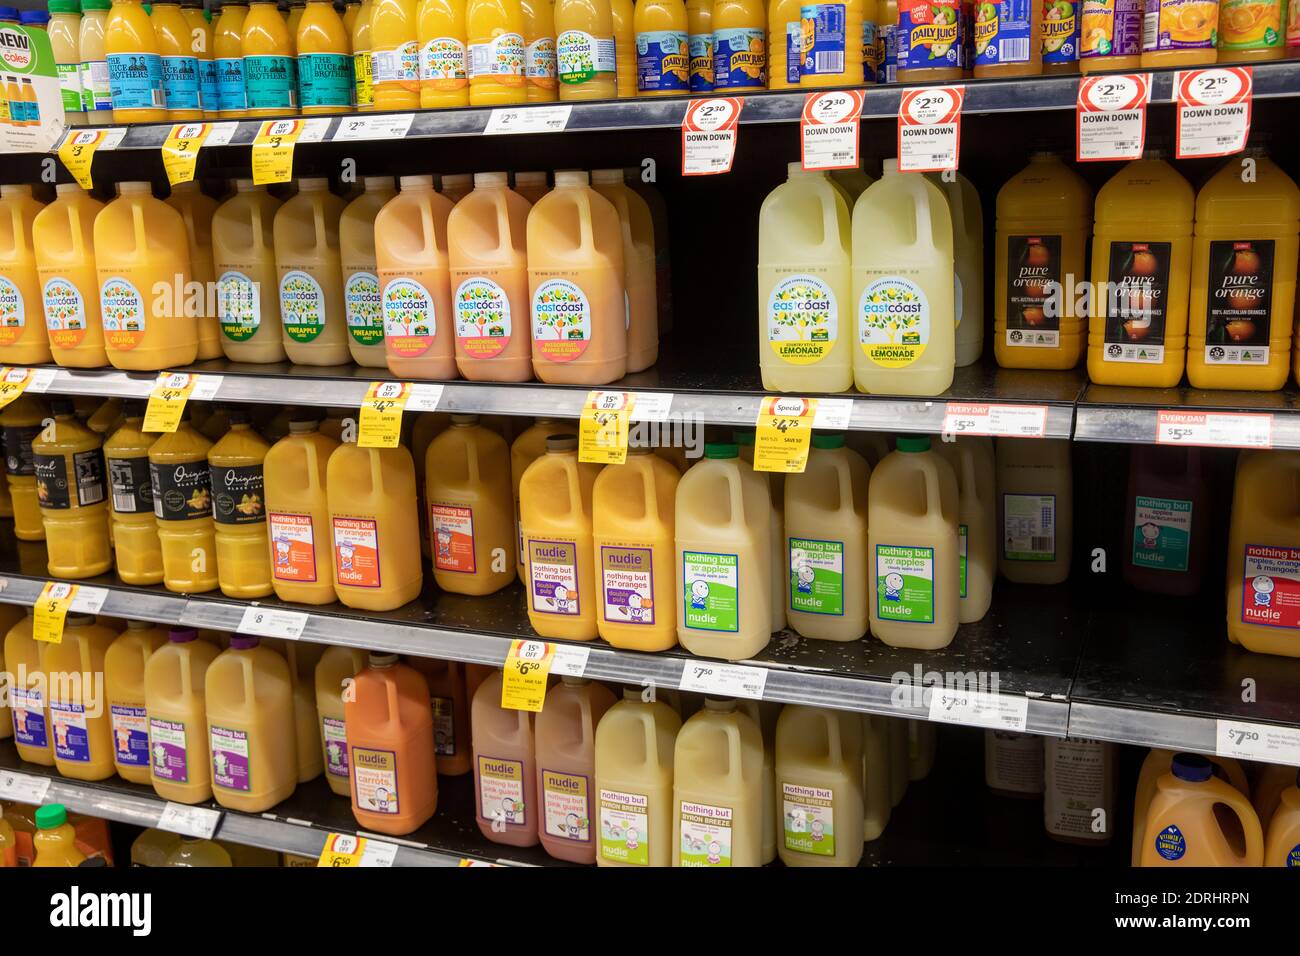 Bevande fresche di succo fresco fresche in vendita in un supermercato australiano A Sydney con bevande di marca nudie Foto Stock